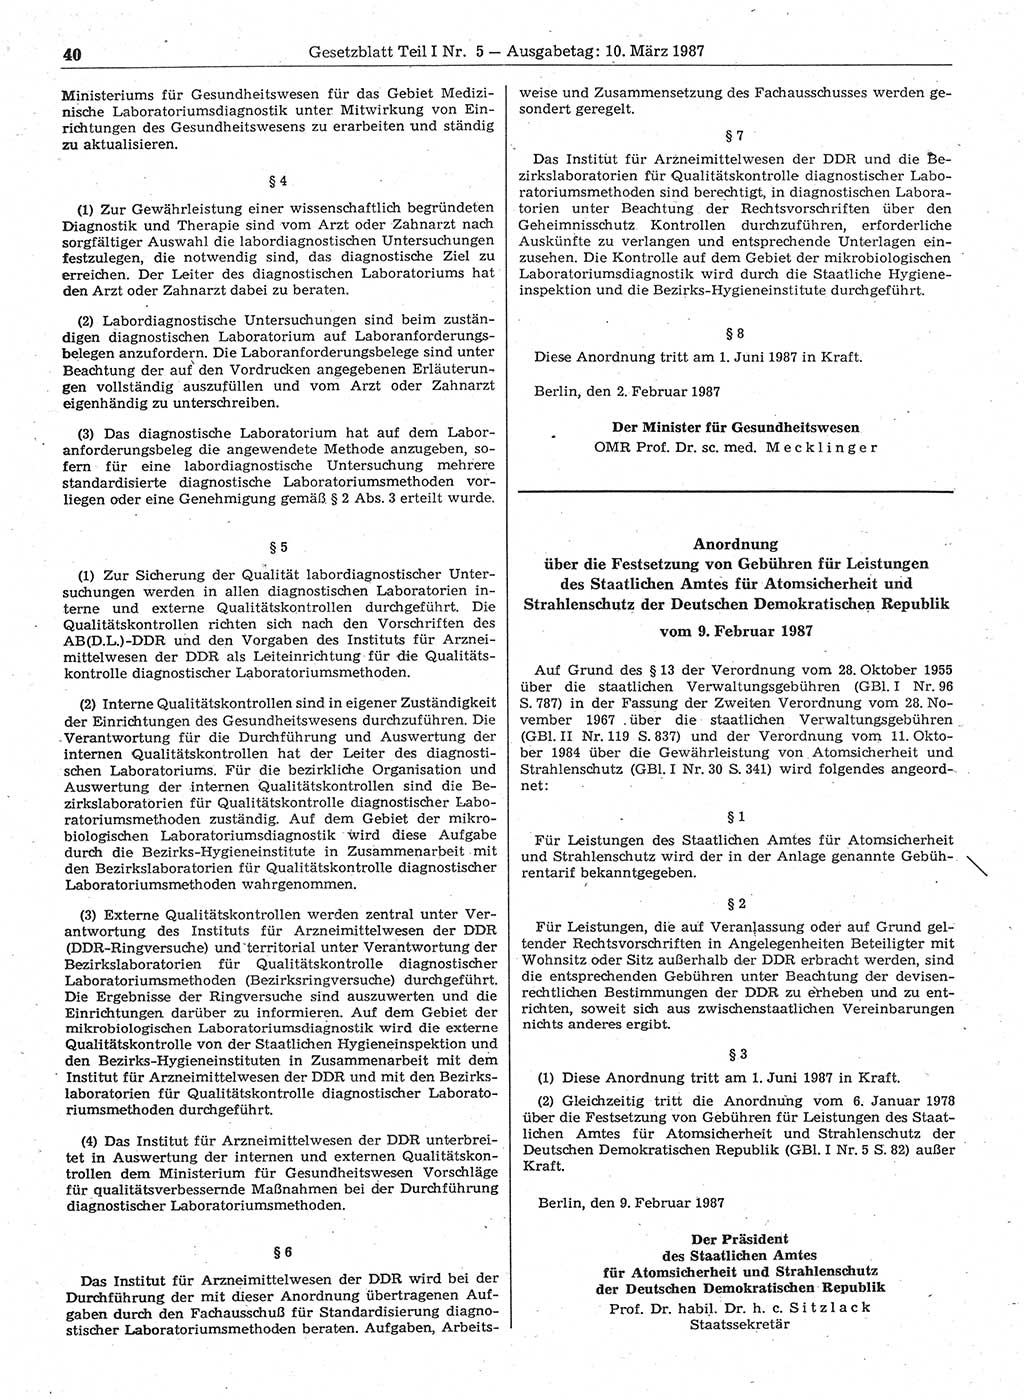 Gesetzblatt (GBl.) der Deutschen Demokratischen Republik (DDR) Teil Ⅰ 1987, Seite 40 (GBl. DDR Ⅰ 1987, S. 40)